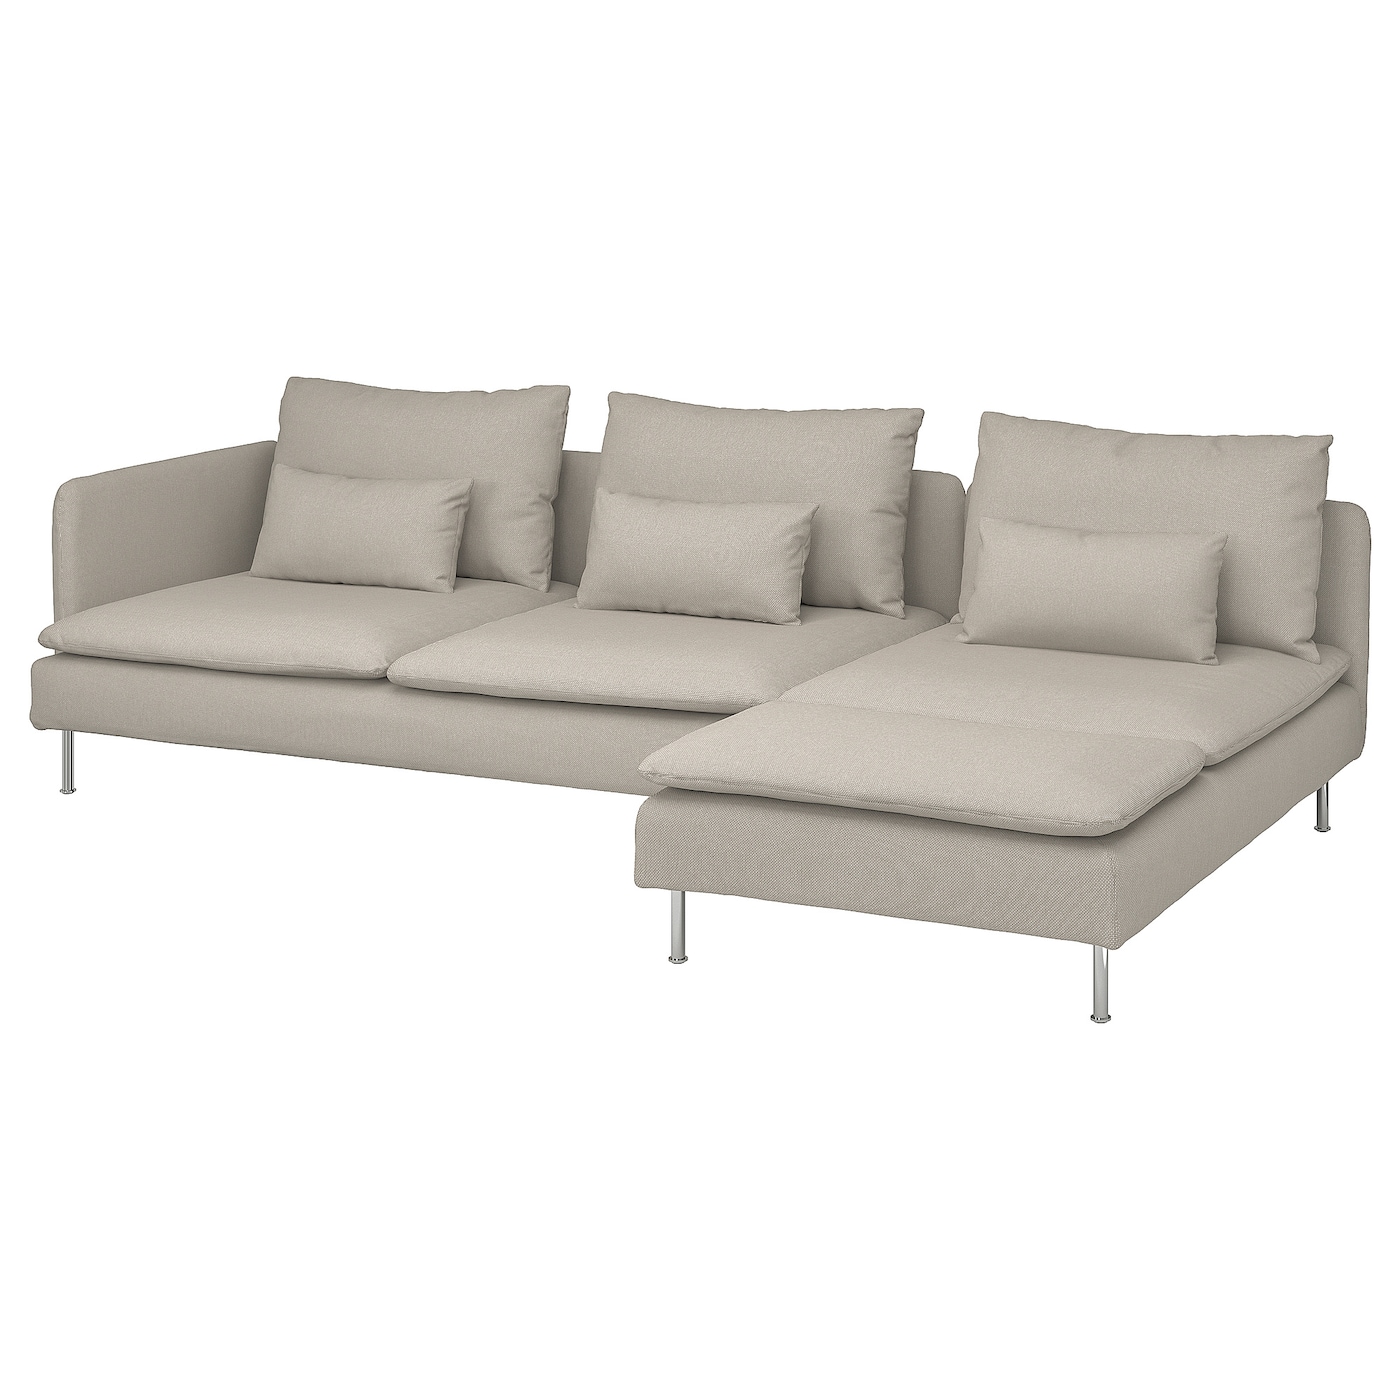 СЁДЕРХАМН 4-местный диван + диван, раскладной Фридтуна/светло-бежевый SODERHAMN IKEA